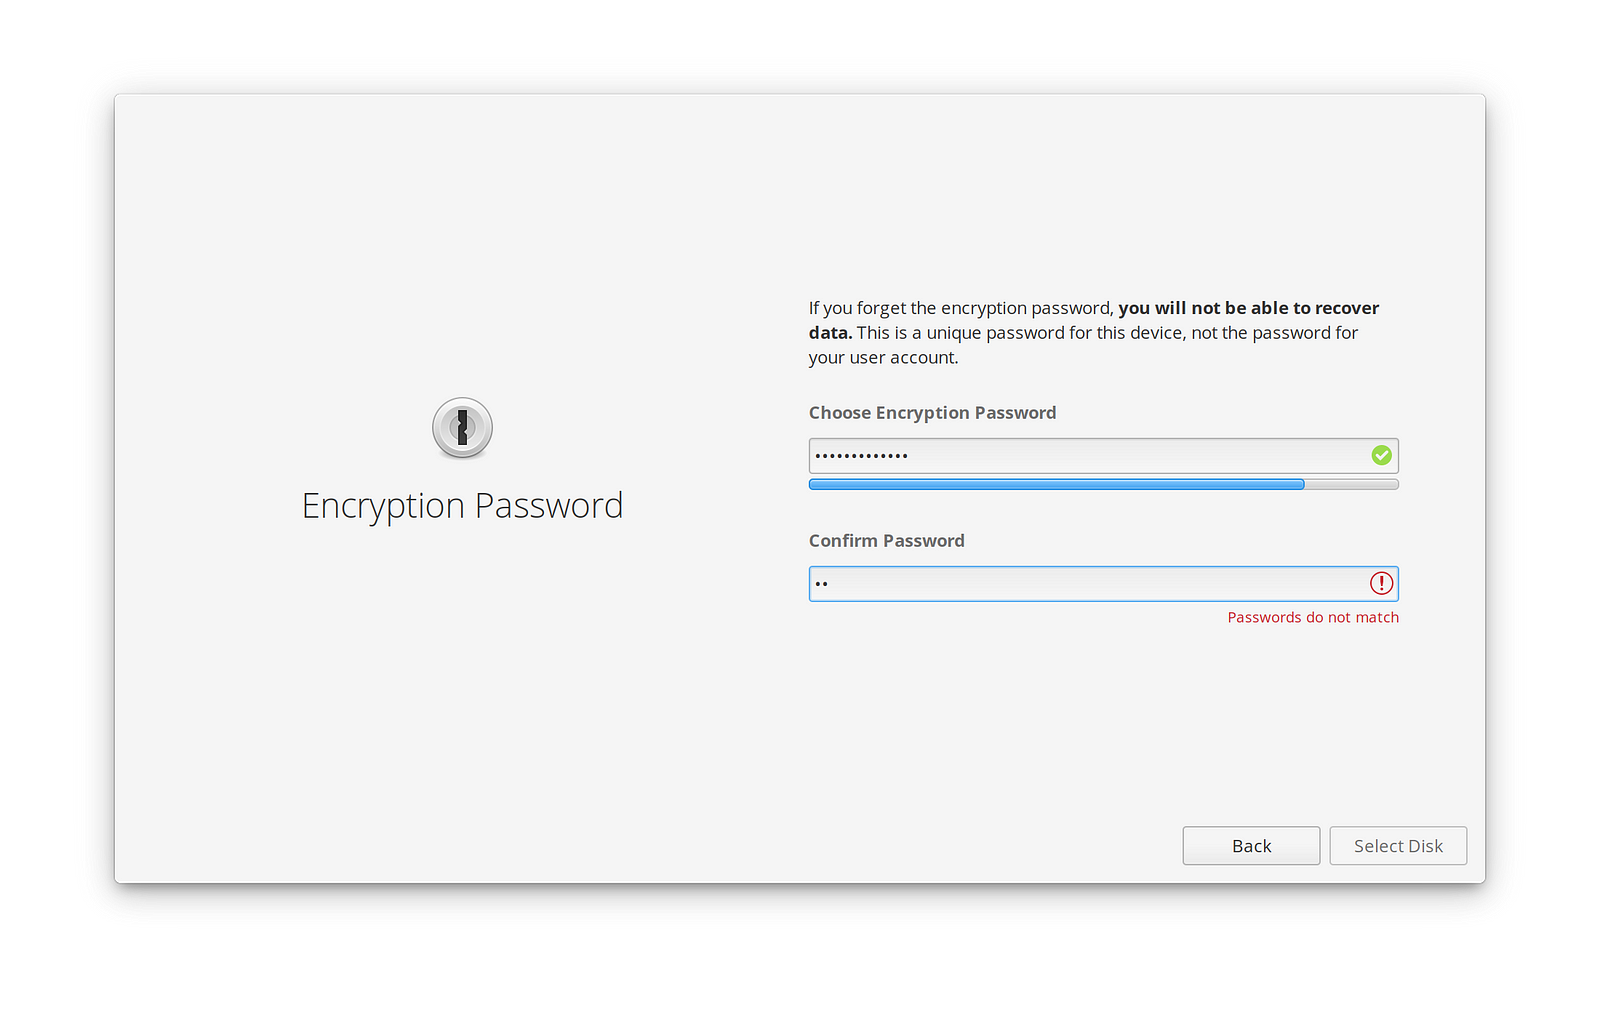 Encryption Password